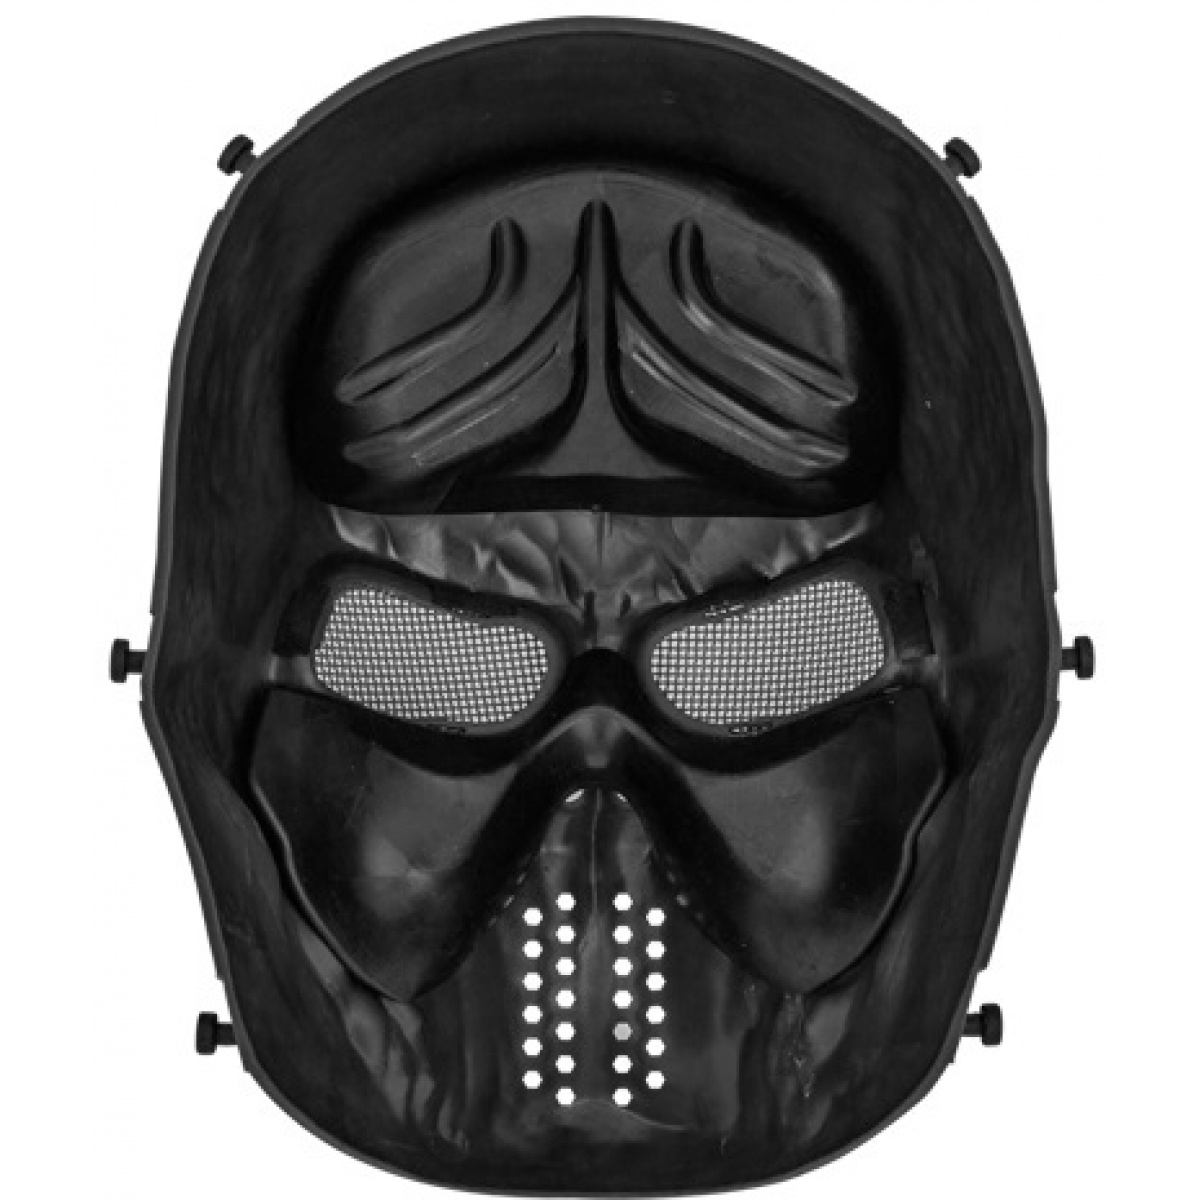 AMA Tactical Villain Skull Mesh Airsoft Face Mask - BLACK | Airsoft ...